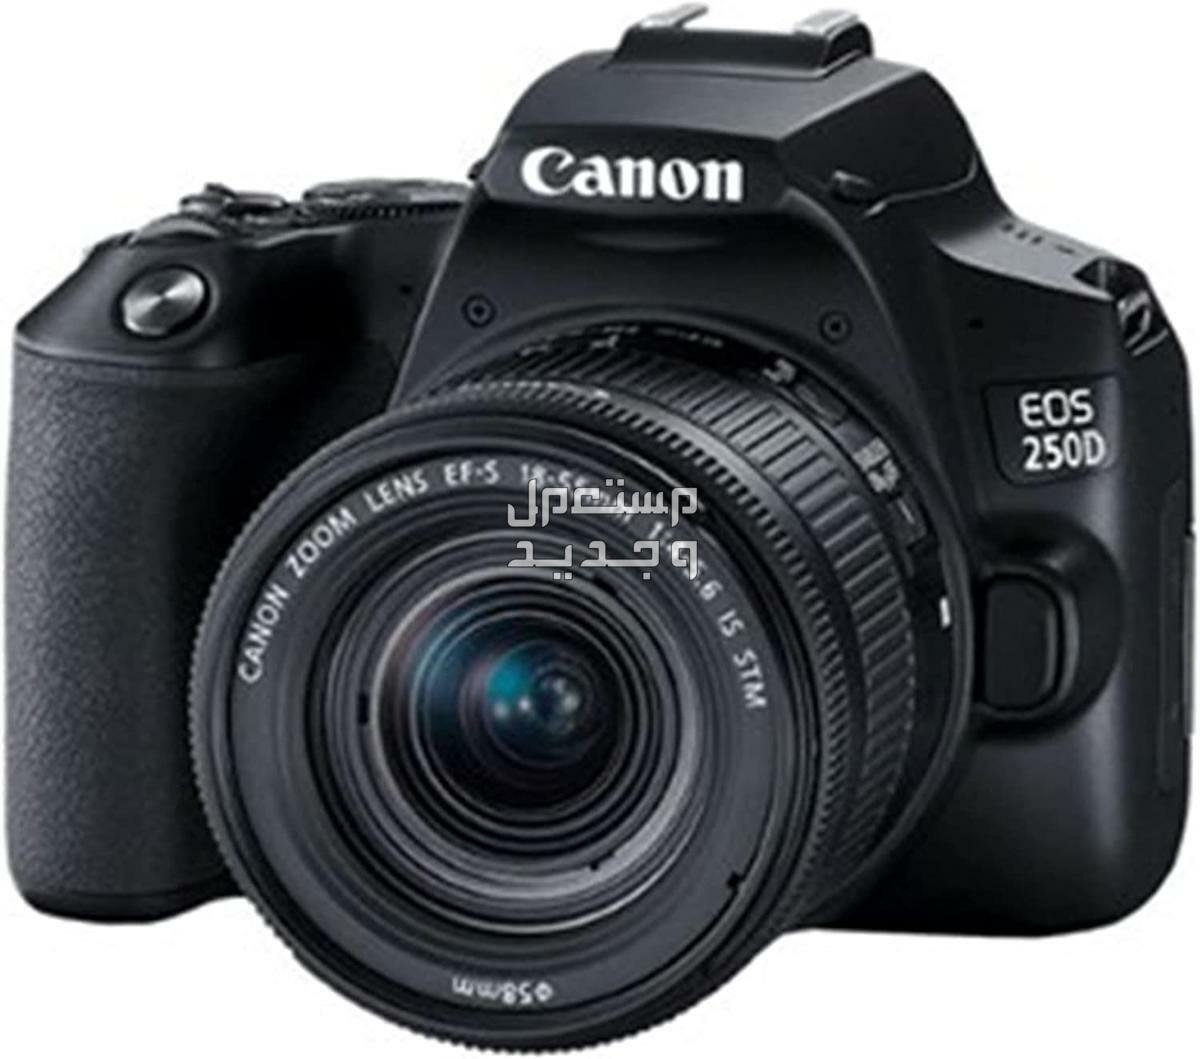 سعر ومميزات ومواصفات أرخص 5 كاميرات تصوير من كانون في عمان كاميرا Canon EOS 250D